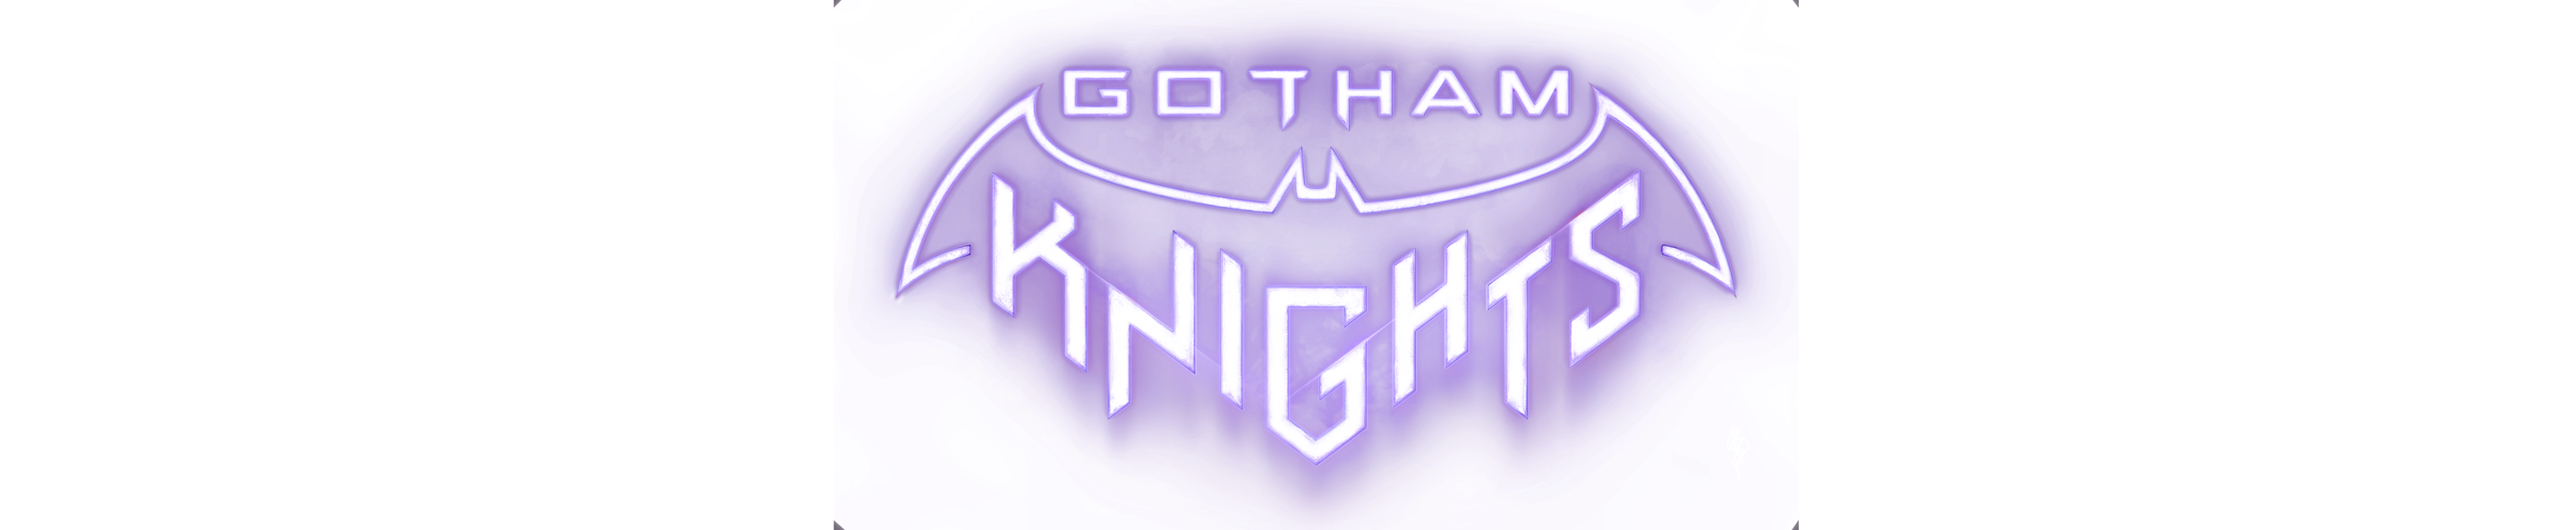 Gotham Knights 로고